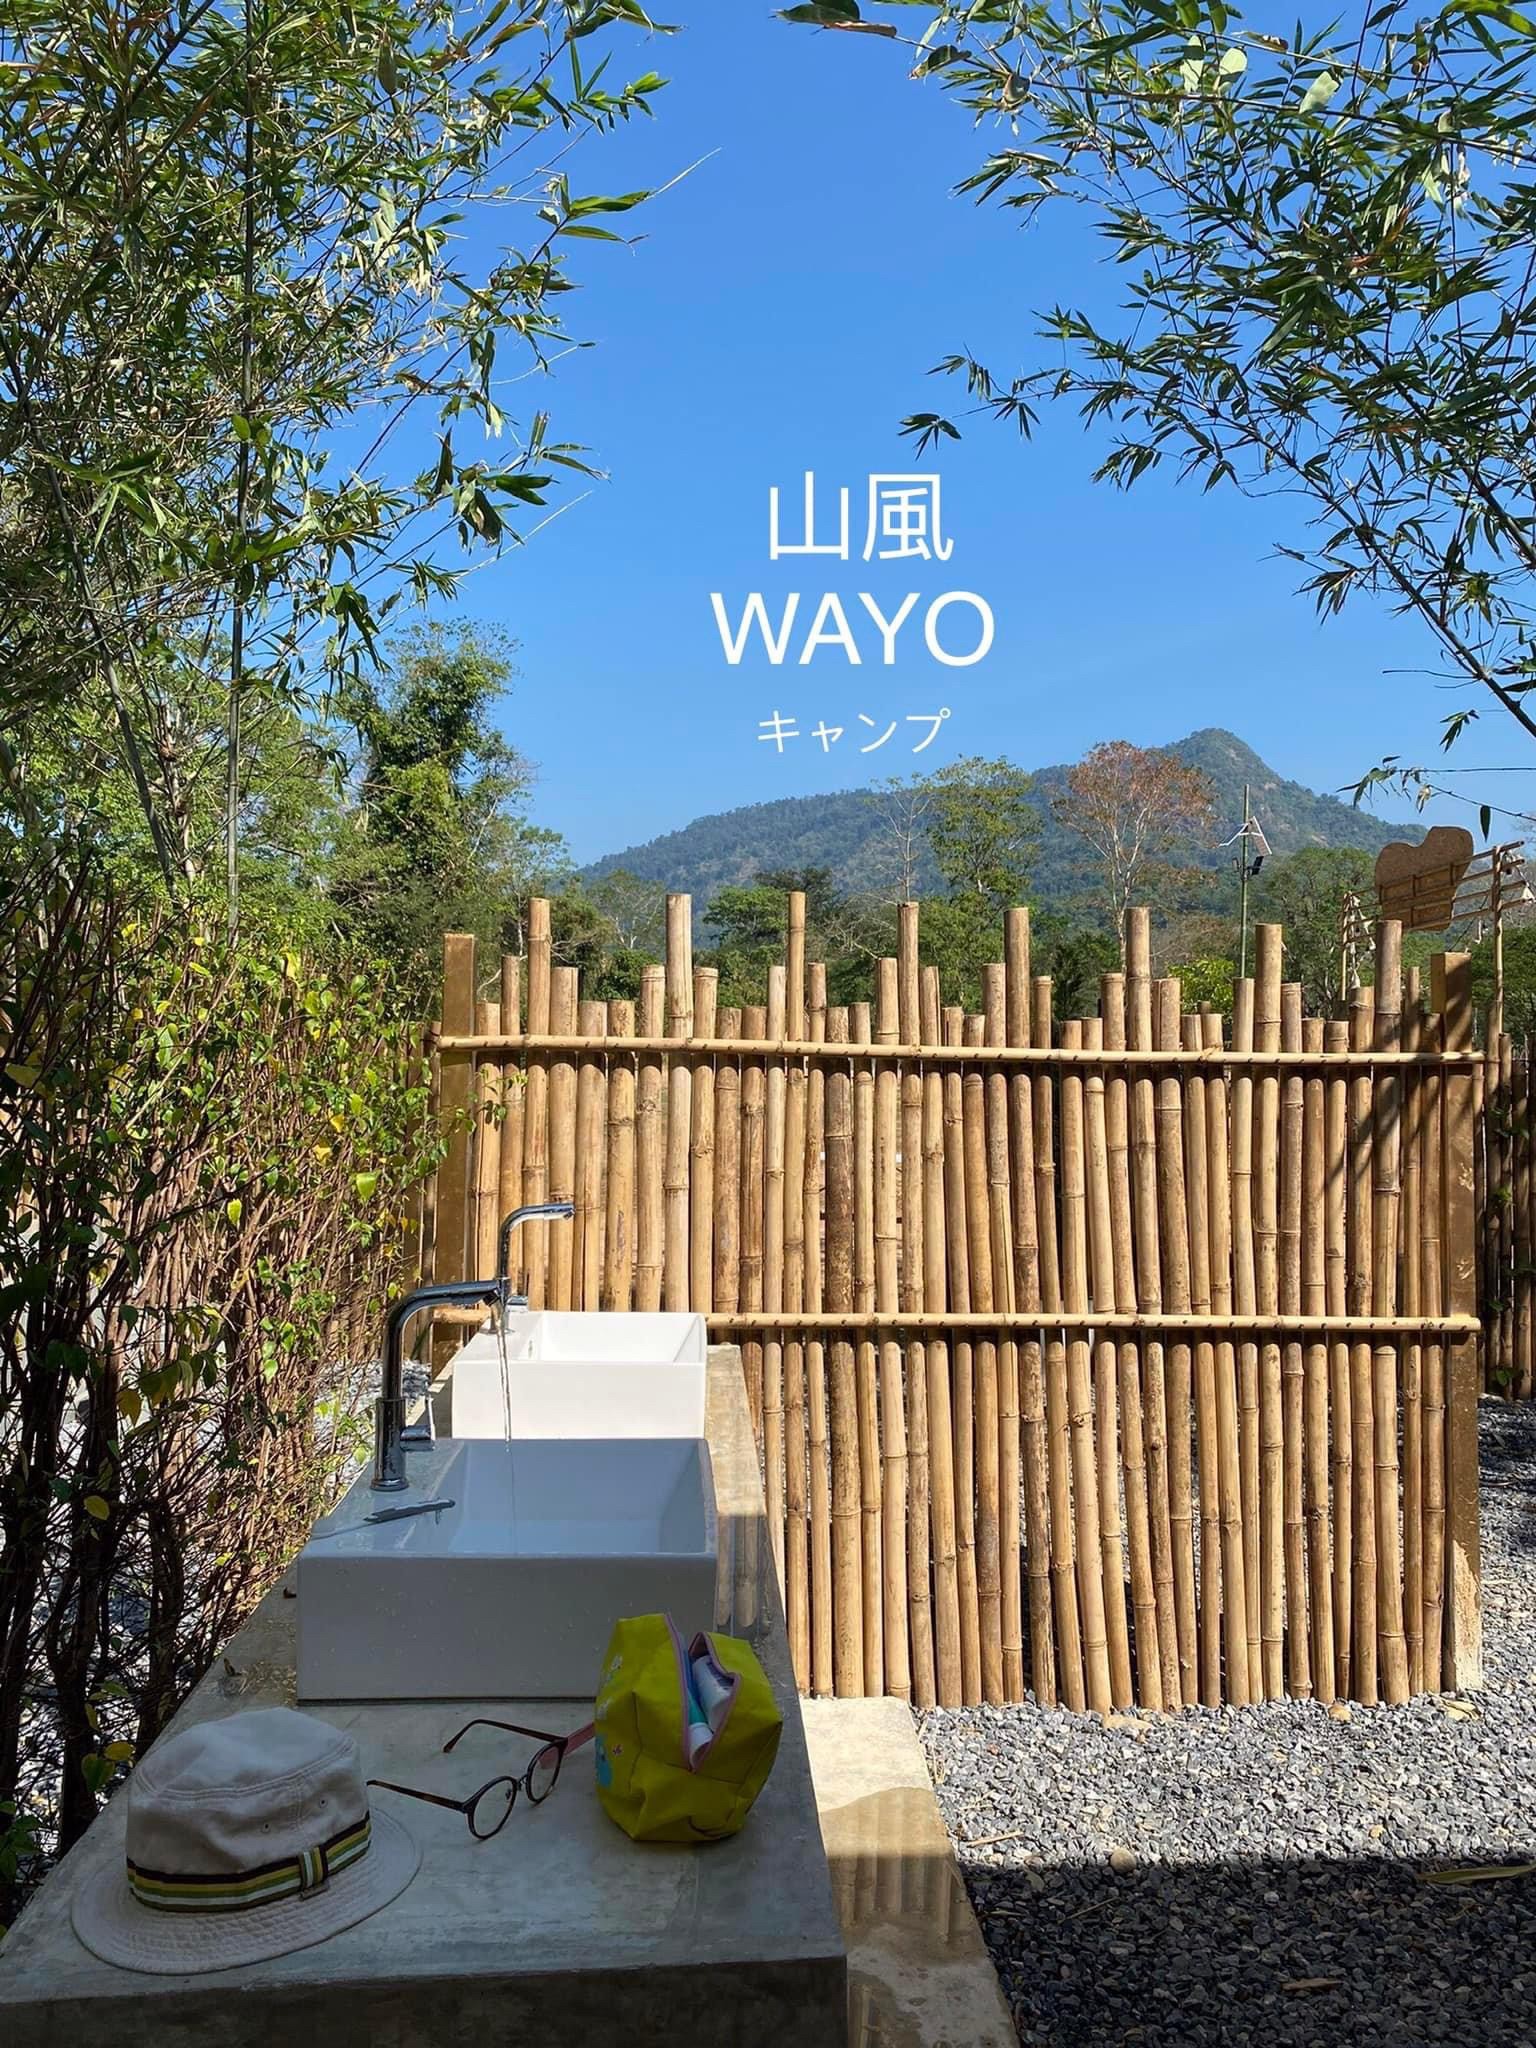 รูป Wayo camp life